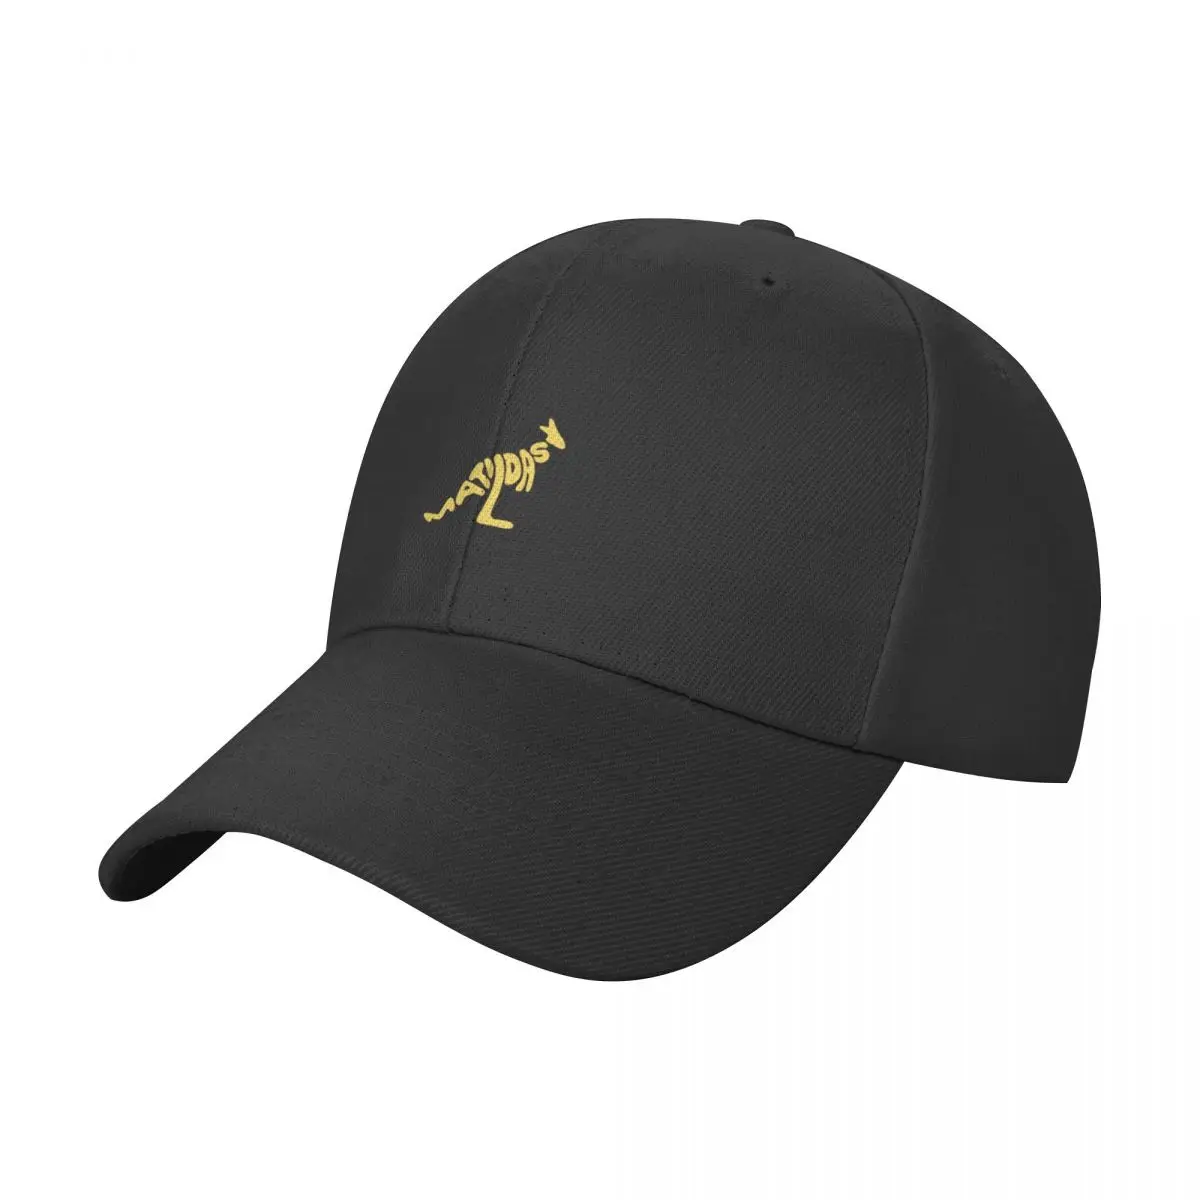 

Matildas Kangaroo - Matildas Baseball Cap Big Size Hat Snap Back Hat |-F-| Brand Man cap Men Golf Wear Women's